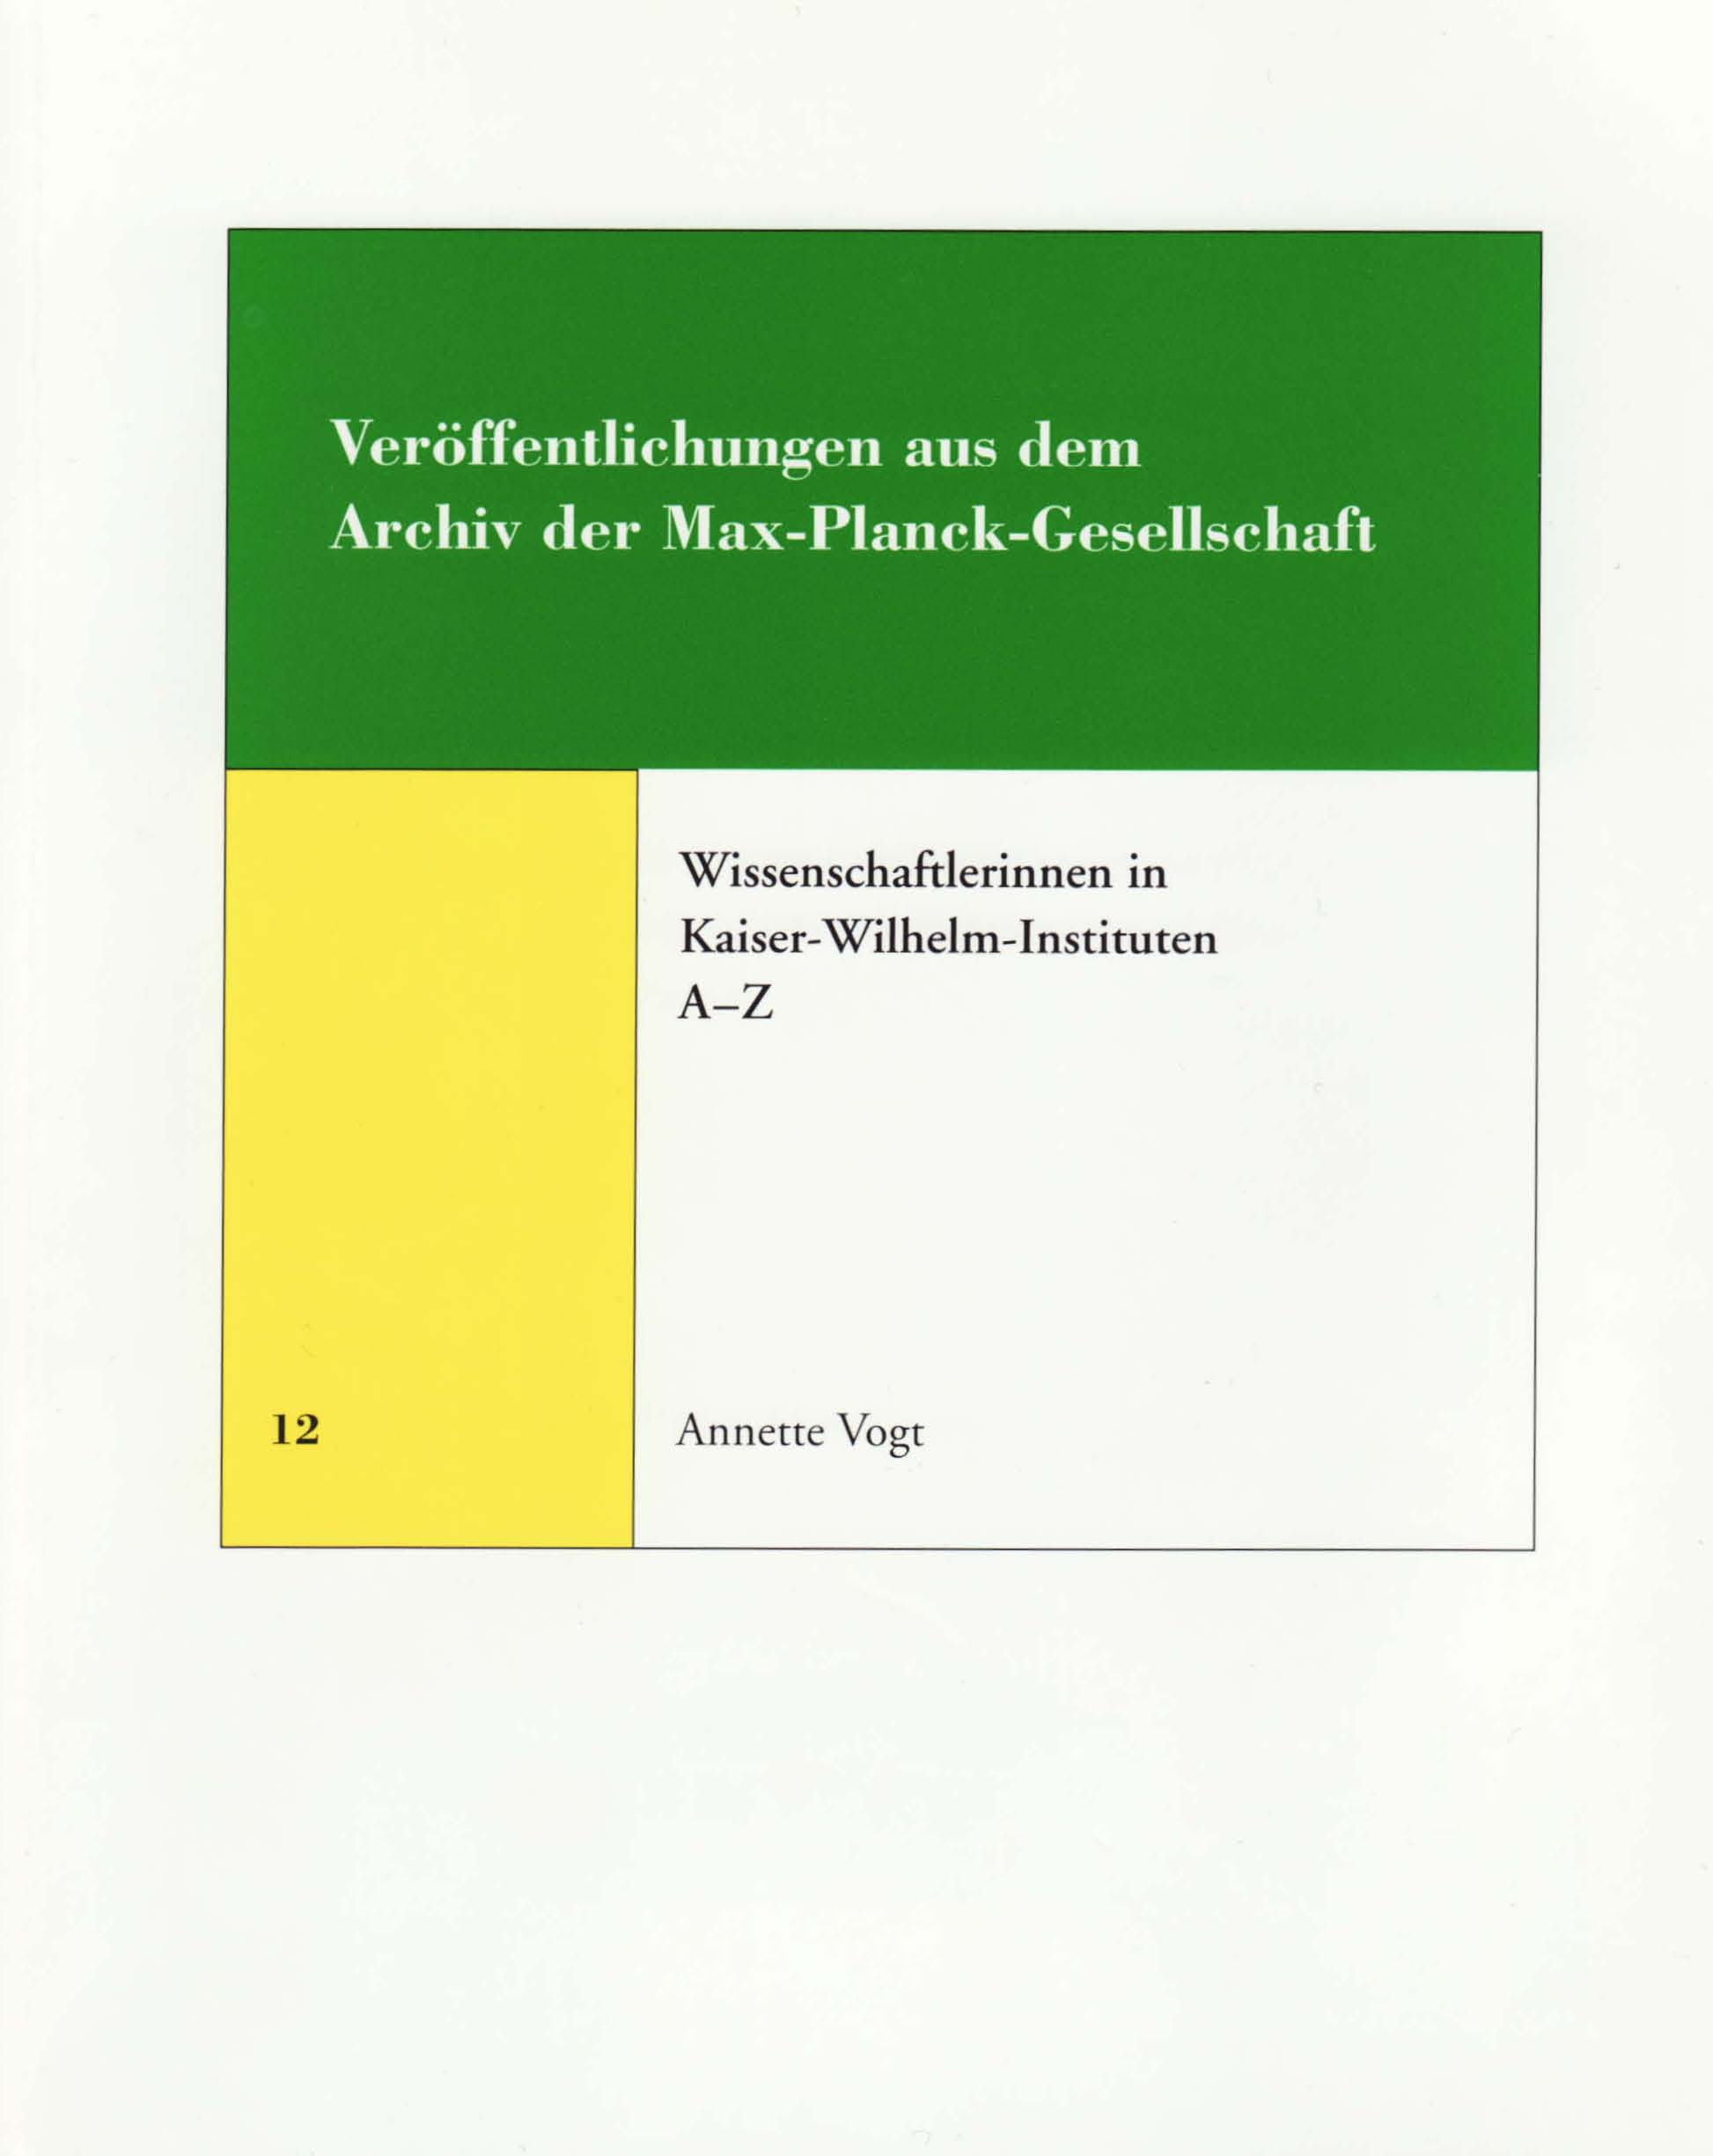 book cover: Vogt, Annette: Wissenschaftlerinnen in Kaiser-Wilhelm-Instituten A-Z (2008)